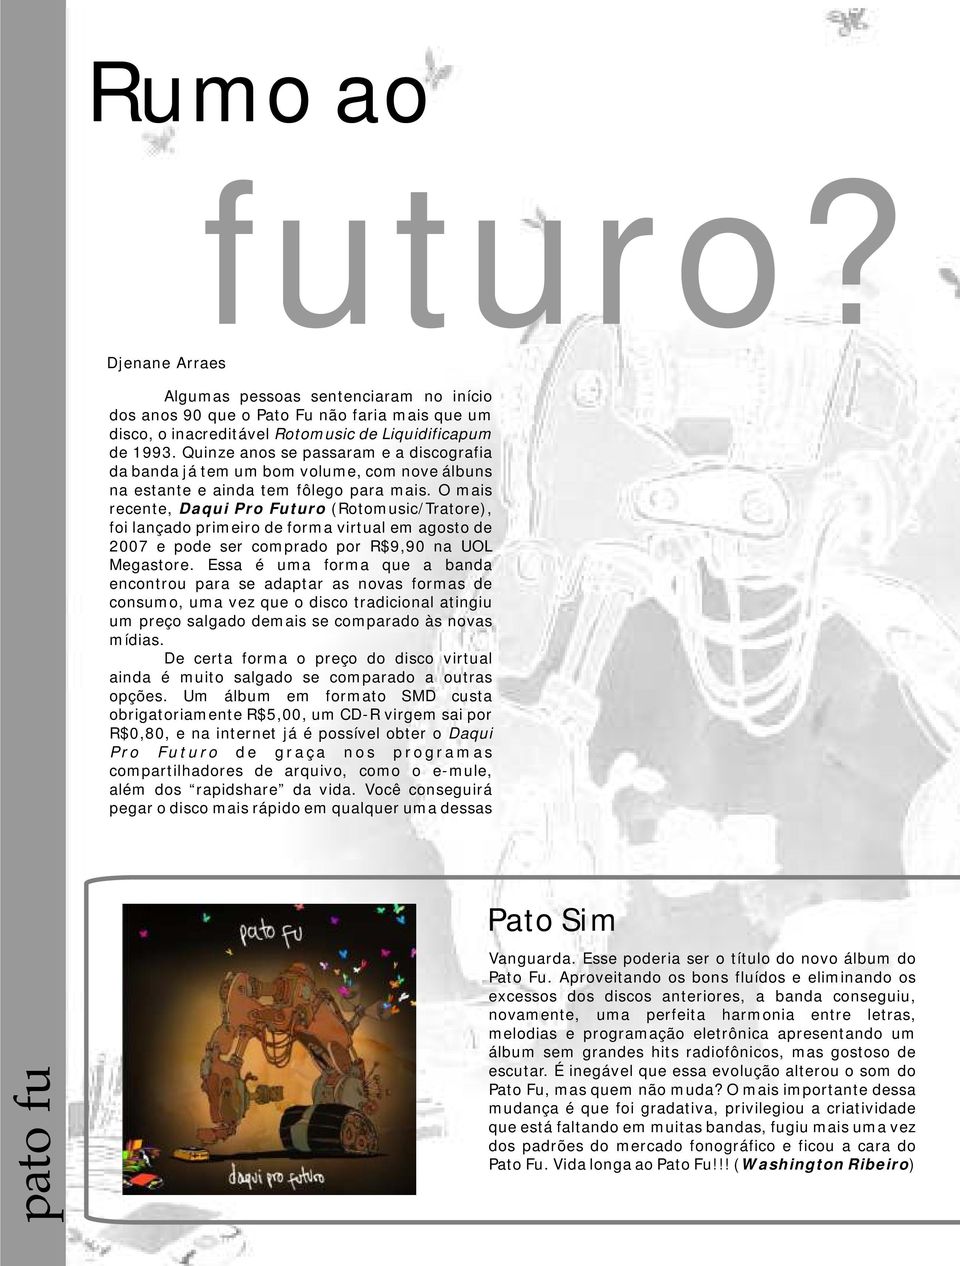 O mais recente, Daqui Pro Futuro (Rotomusic/Tratore), foi lançado primeiro de forma virtual em agosto de 2007 e pode ser comprado por R$9,90 na UOL Megastore.